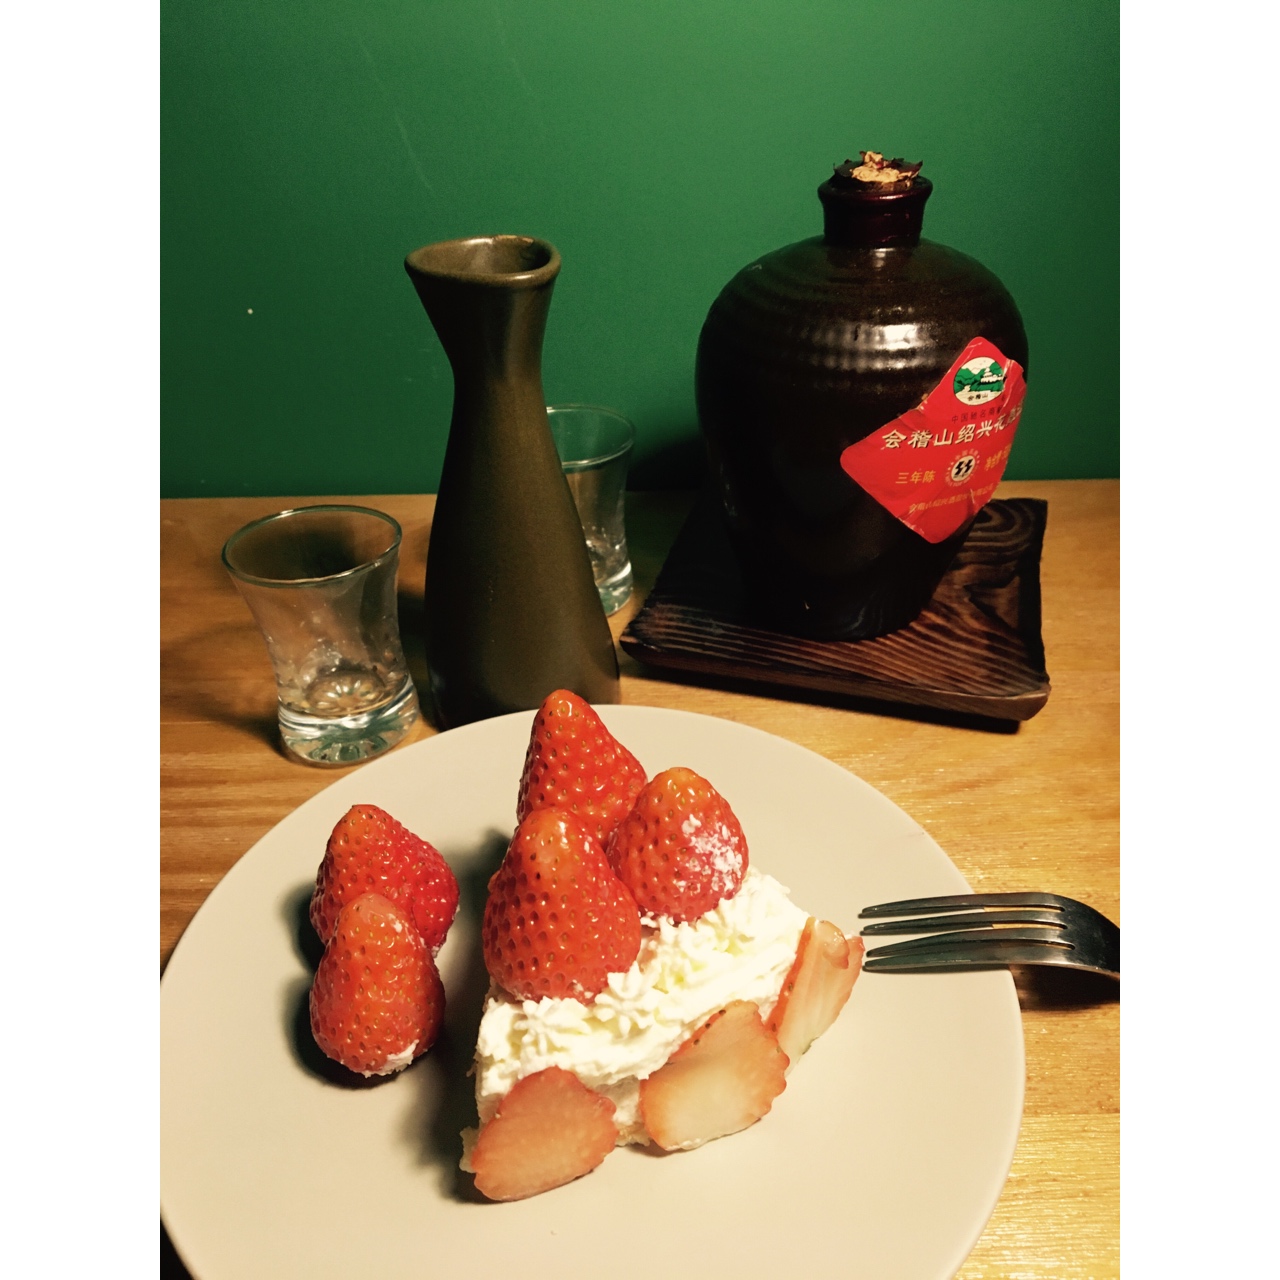 草莓鲜奶油蛋糕